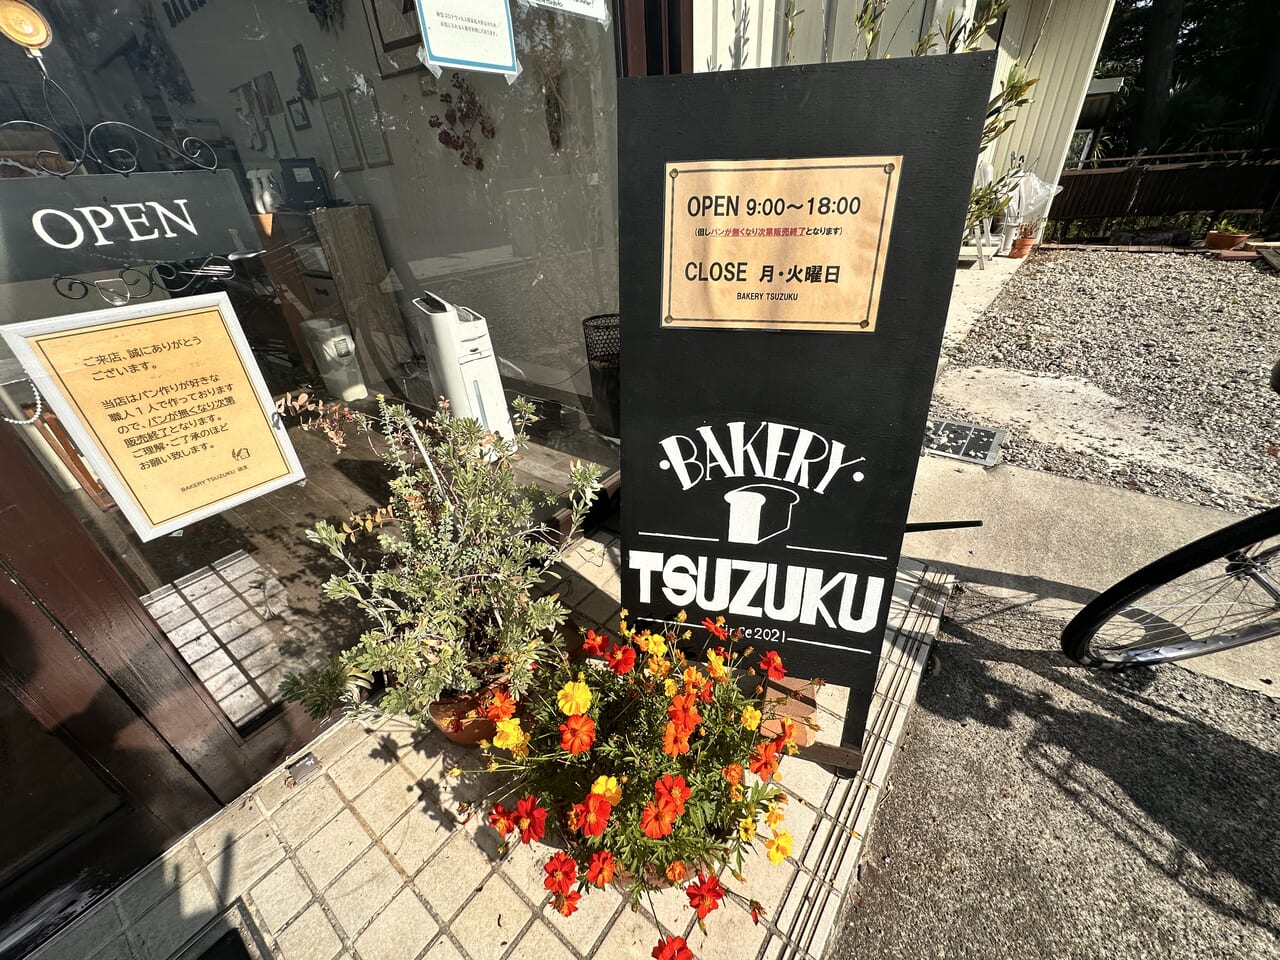 bakery_tsuzuku